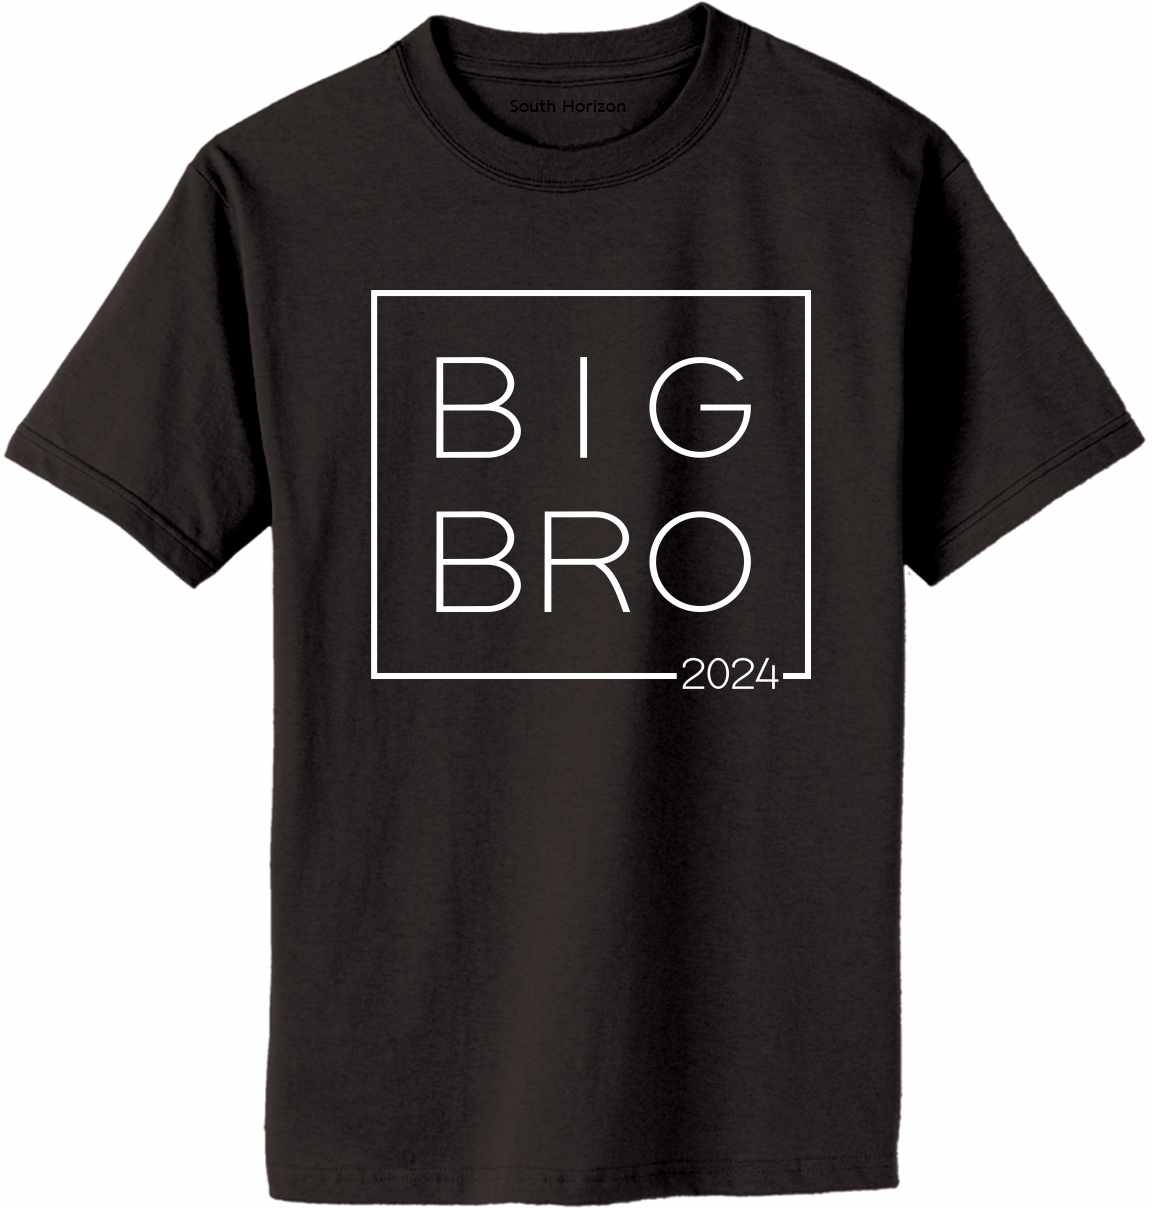 Big Bro 2024 - Big Brother Box on Adult T-Shirt